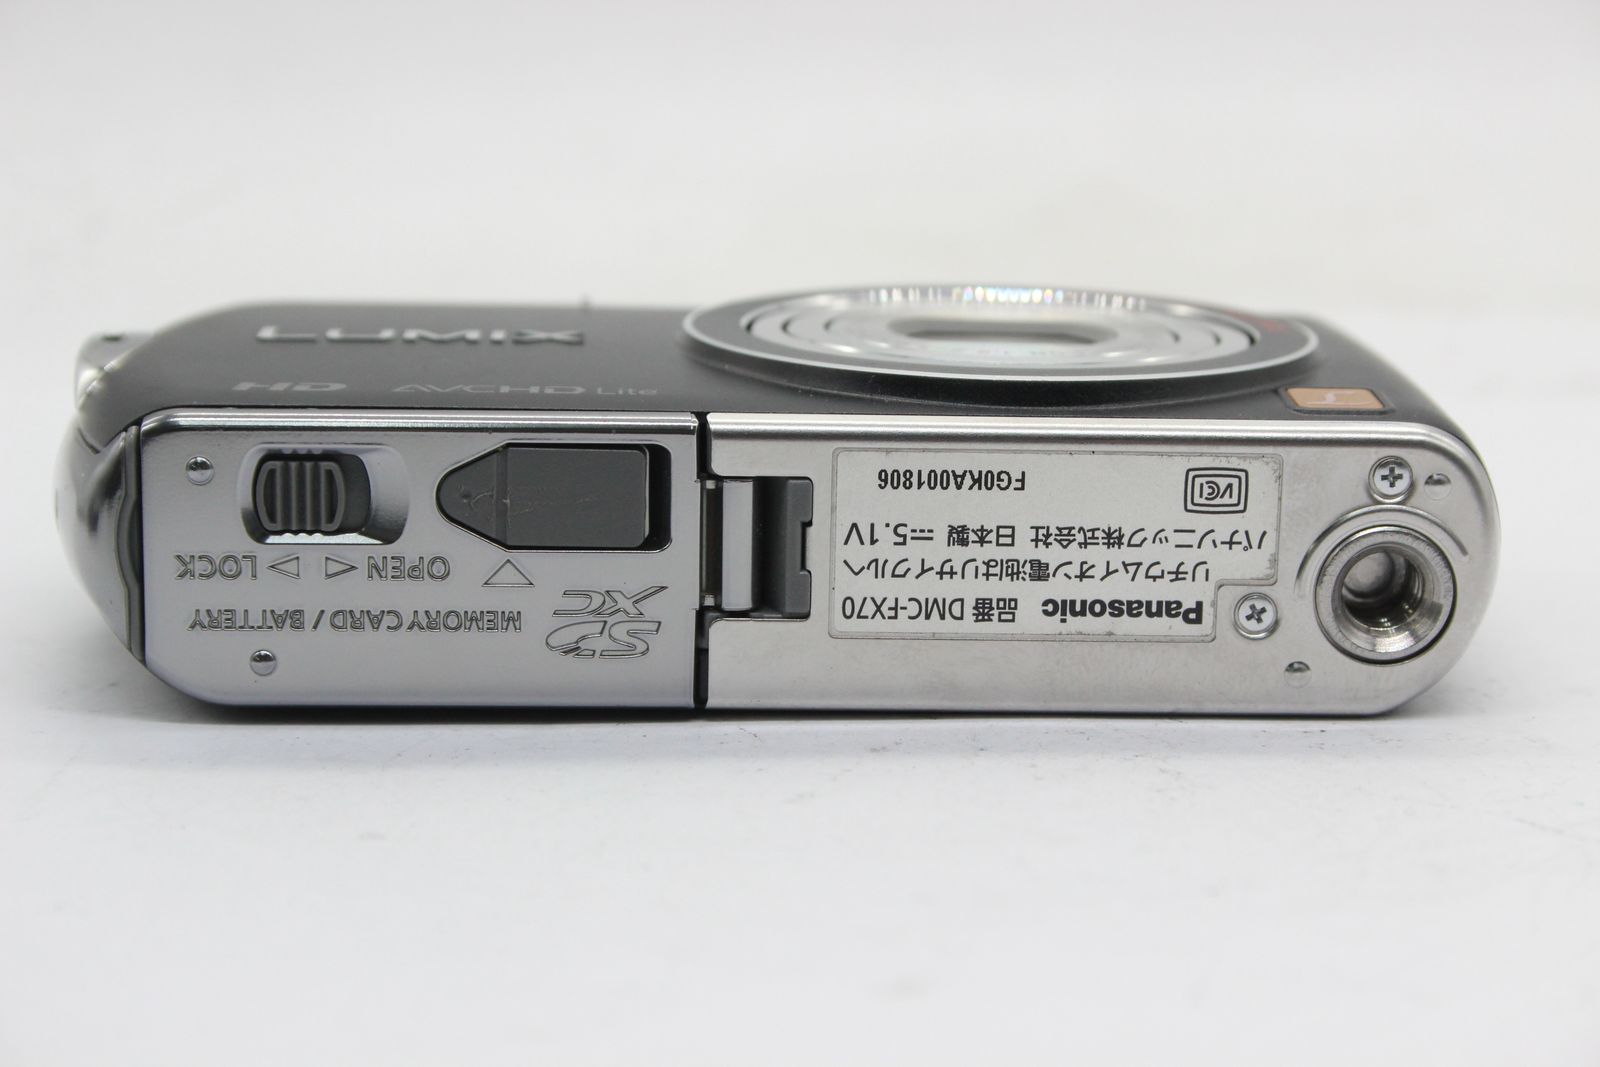 【美品 返品保証】 パナソニック Panasonic LUMIX DMC-FX70 ブラック 24mm Wide バッテリー付き  コンパクトデジタルカメラ s4974